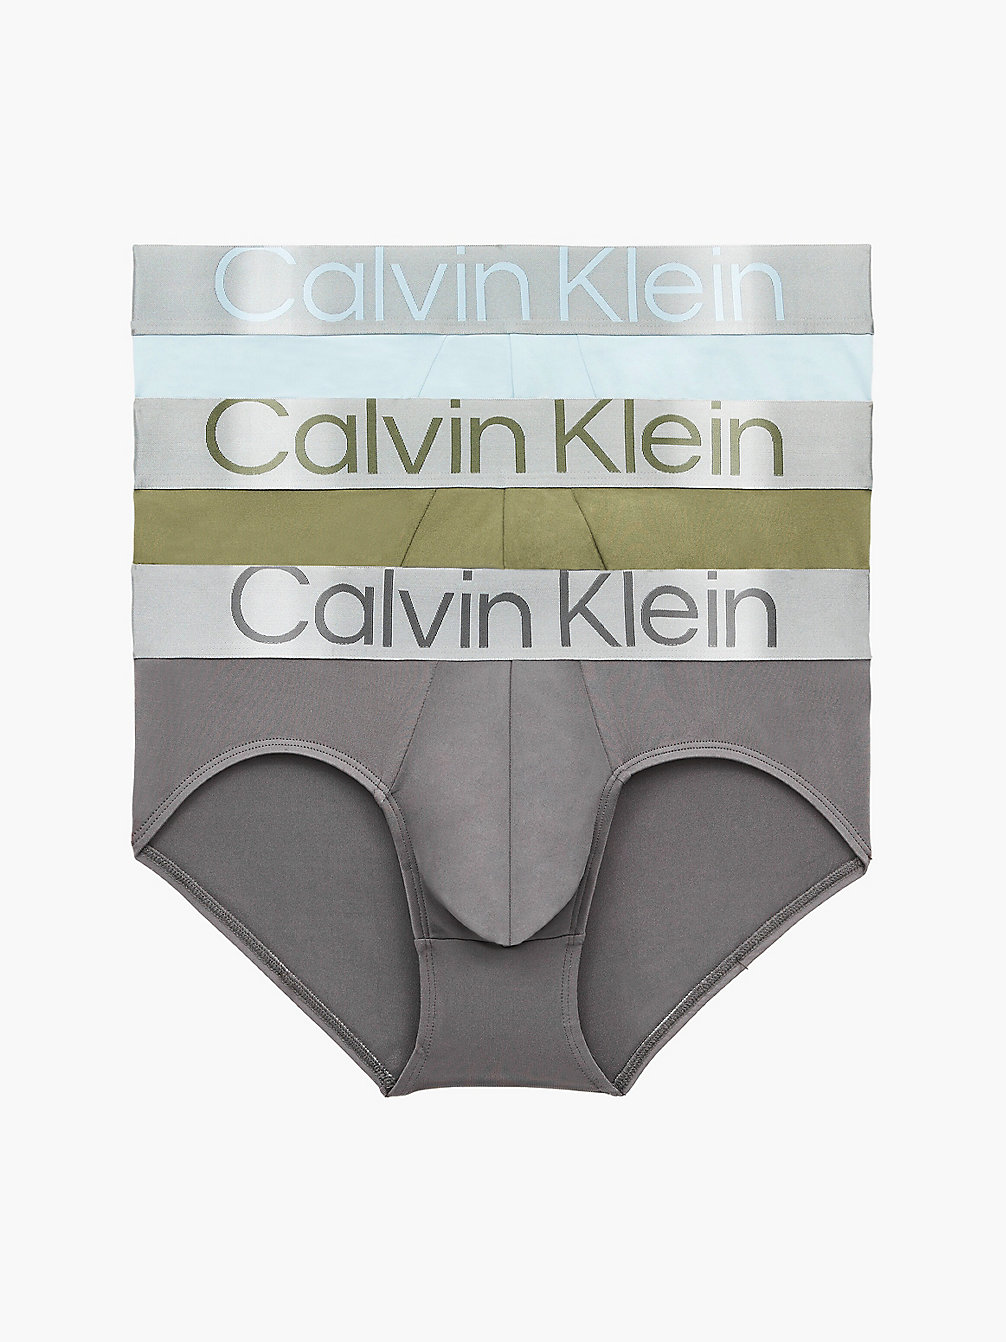 NAPA/ PALEST BLUE/ GREY SKY 3 Pack Briefs - Steel Micro undefined men Calvin Klein